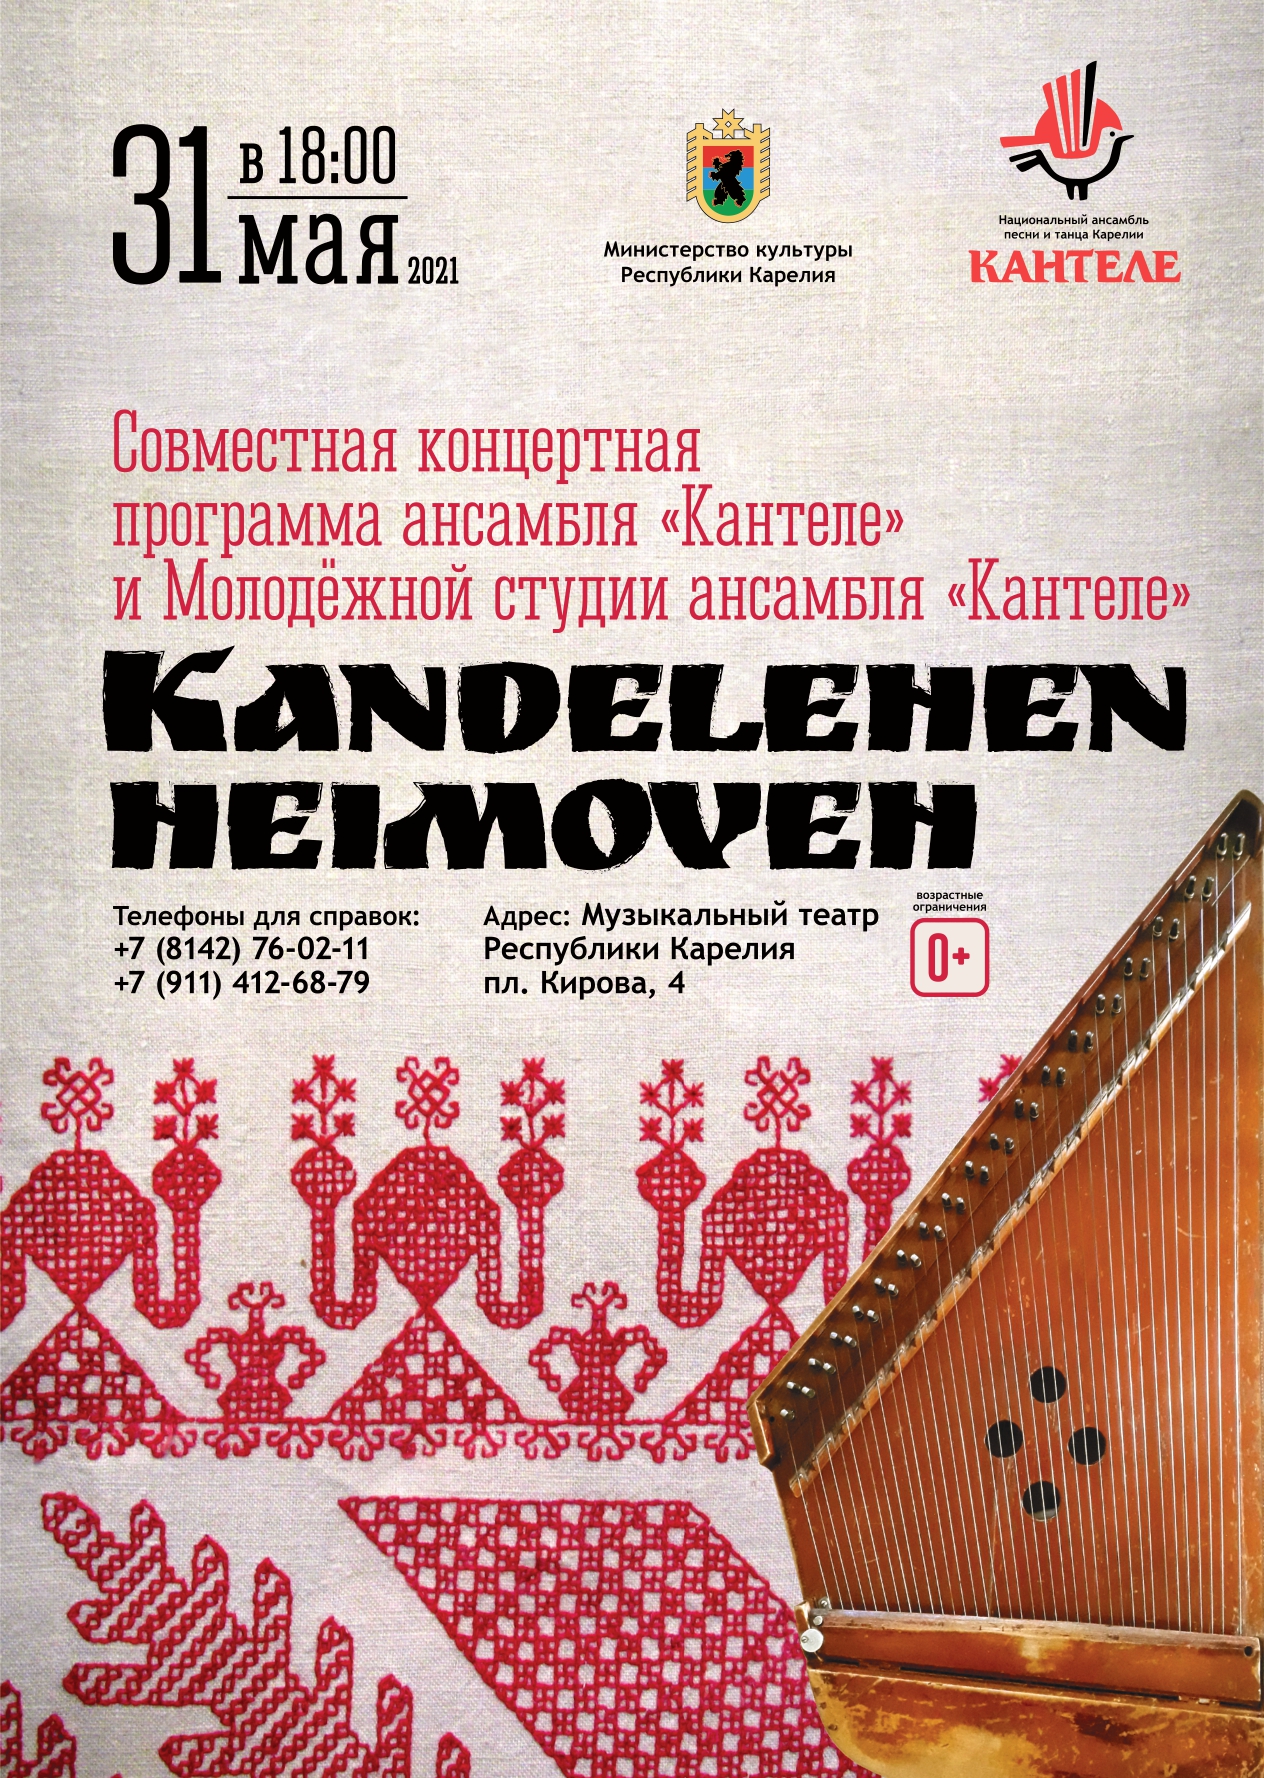 Премьера программы «Kandelehen heimoveh» («Род кантеле»)